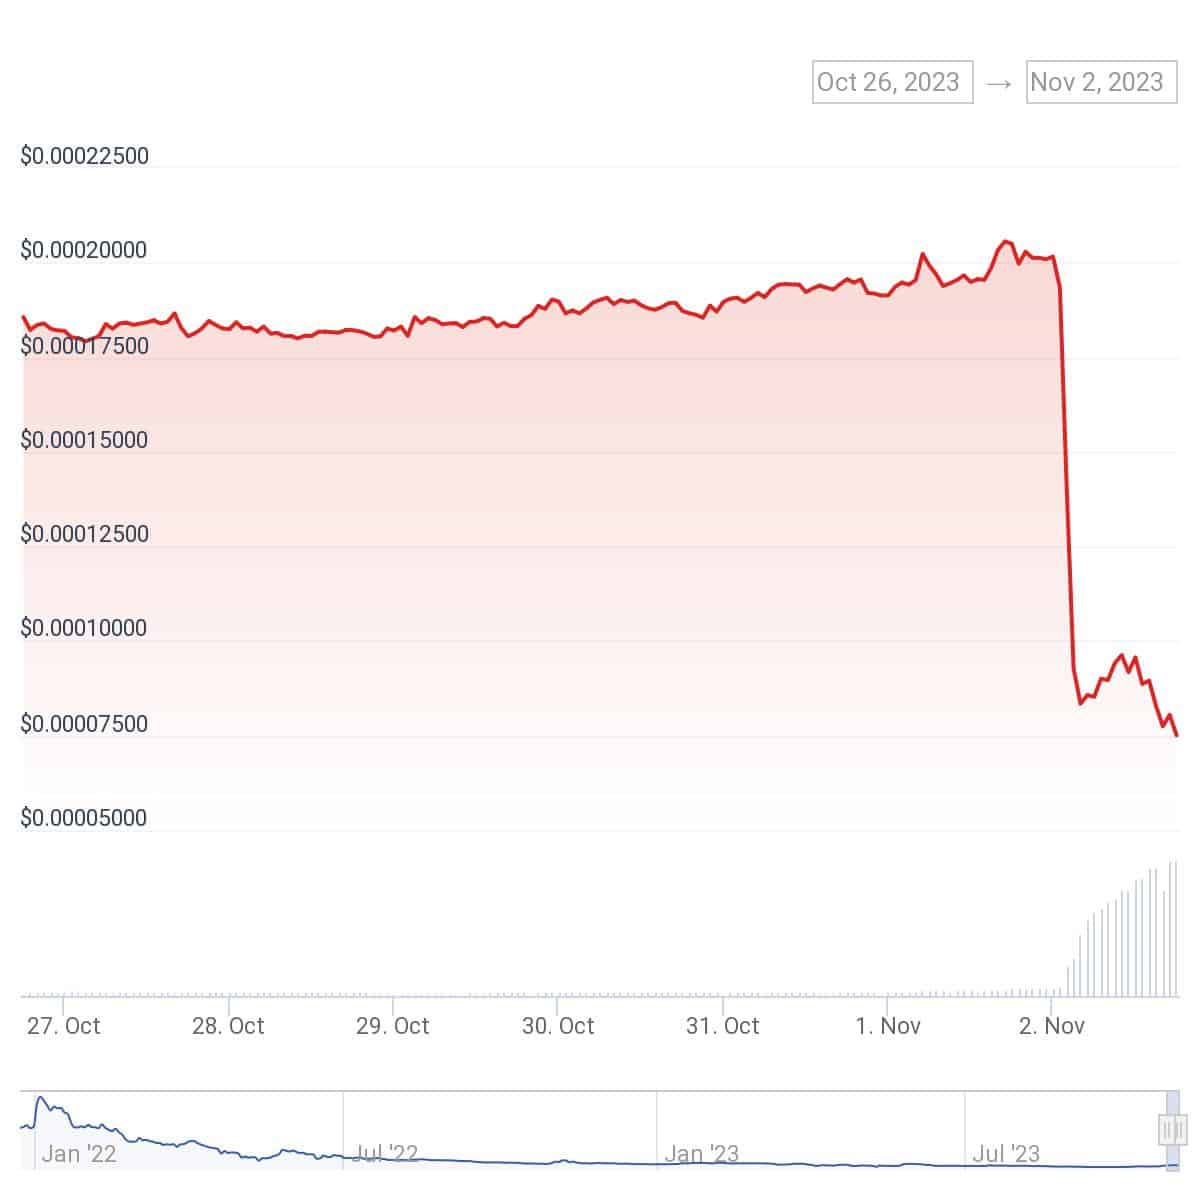 Aperçu de la performance du token SafeMoon au cours des sept derniers jours - Source : CoinGecko